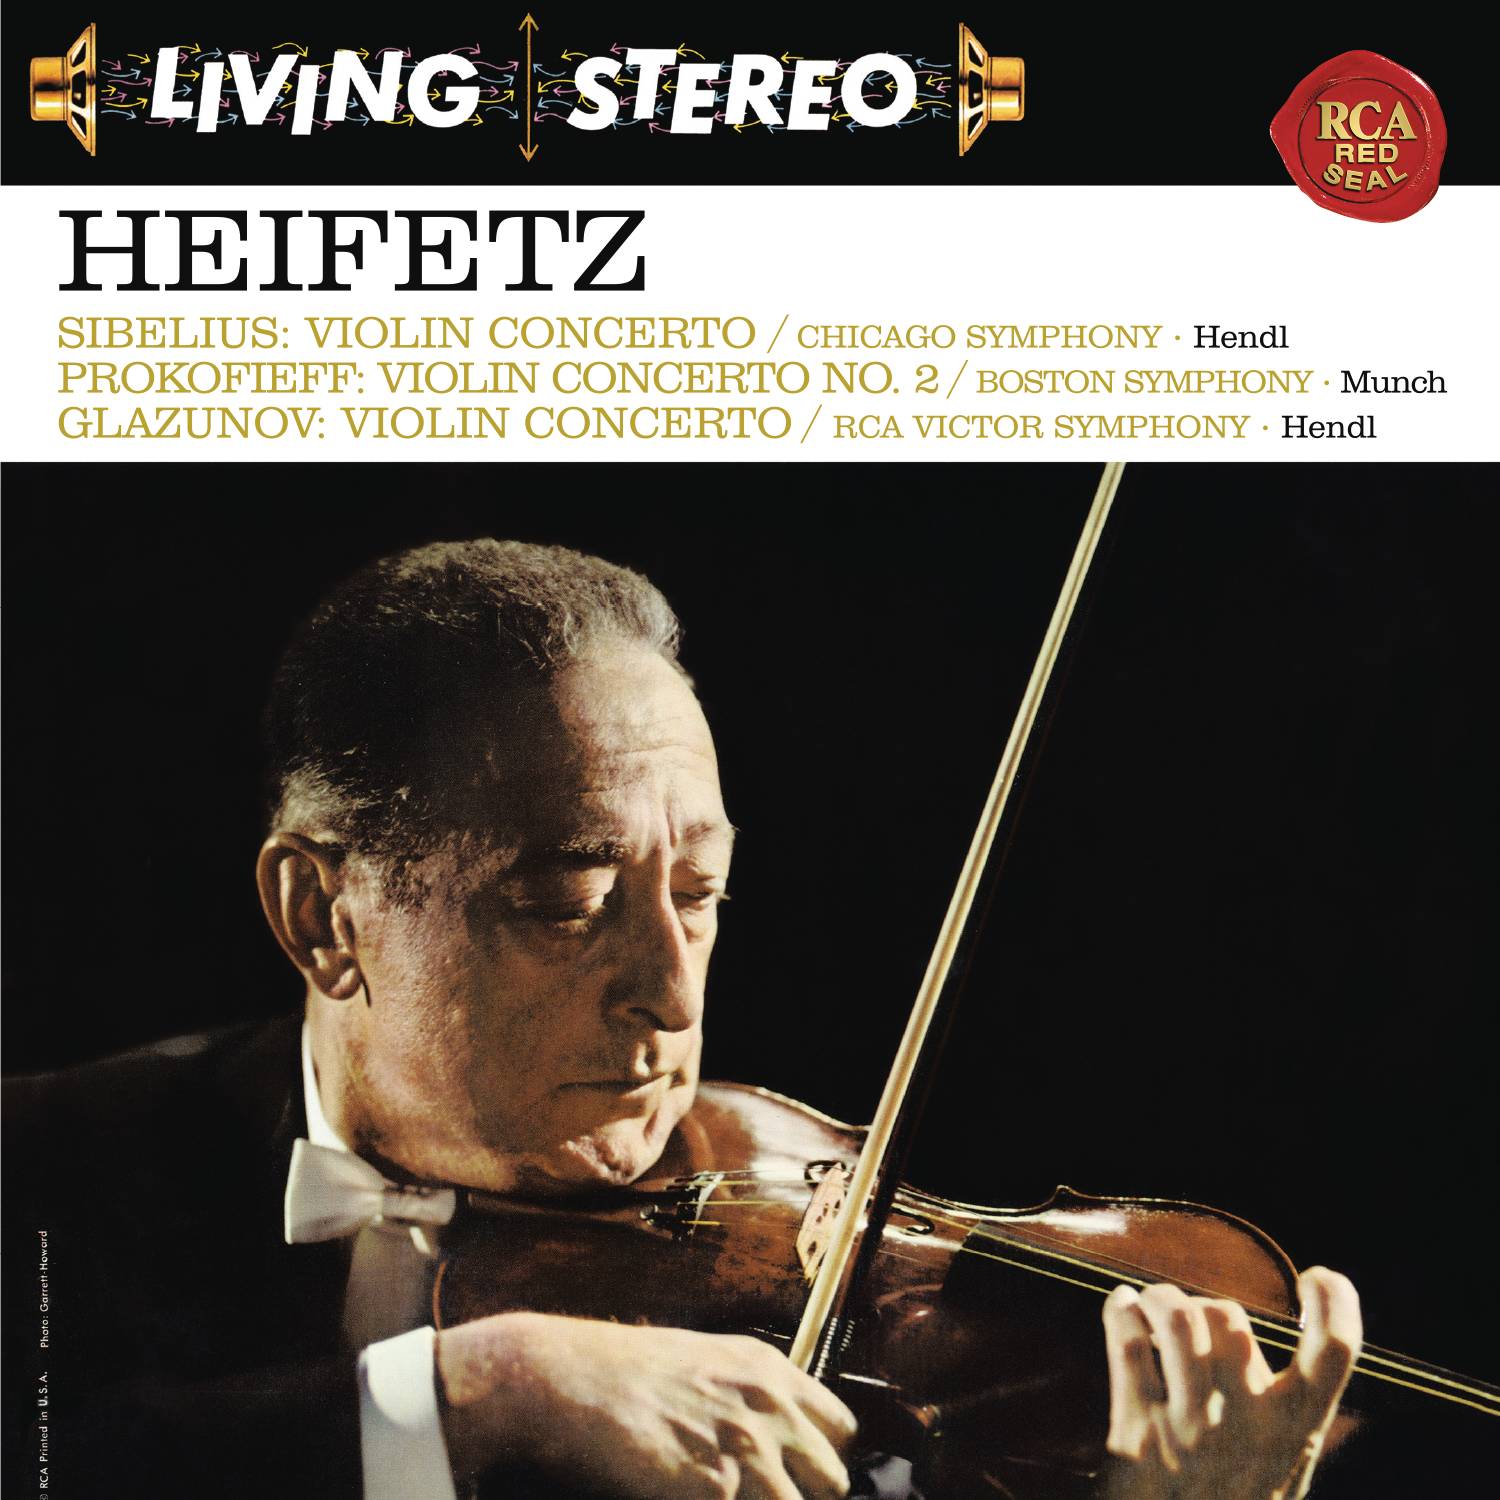 Sibelius: Violin Concerto in D Minor, Op. 47 -  Prokofiev: Violin Concerto No. 2 in G Minor, Op. 63 - Glazunov: Violin Concerto in A Minor, Op. 82 - Heifetz Remastered